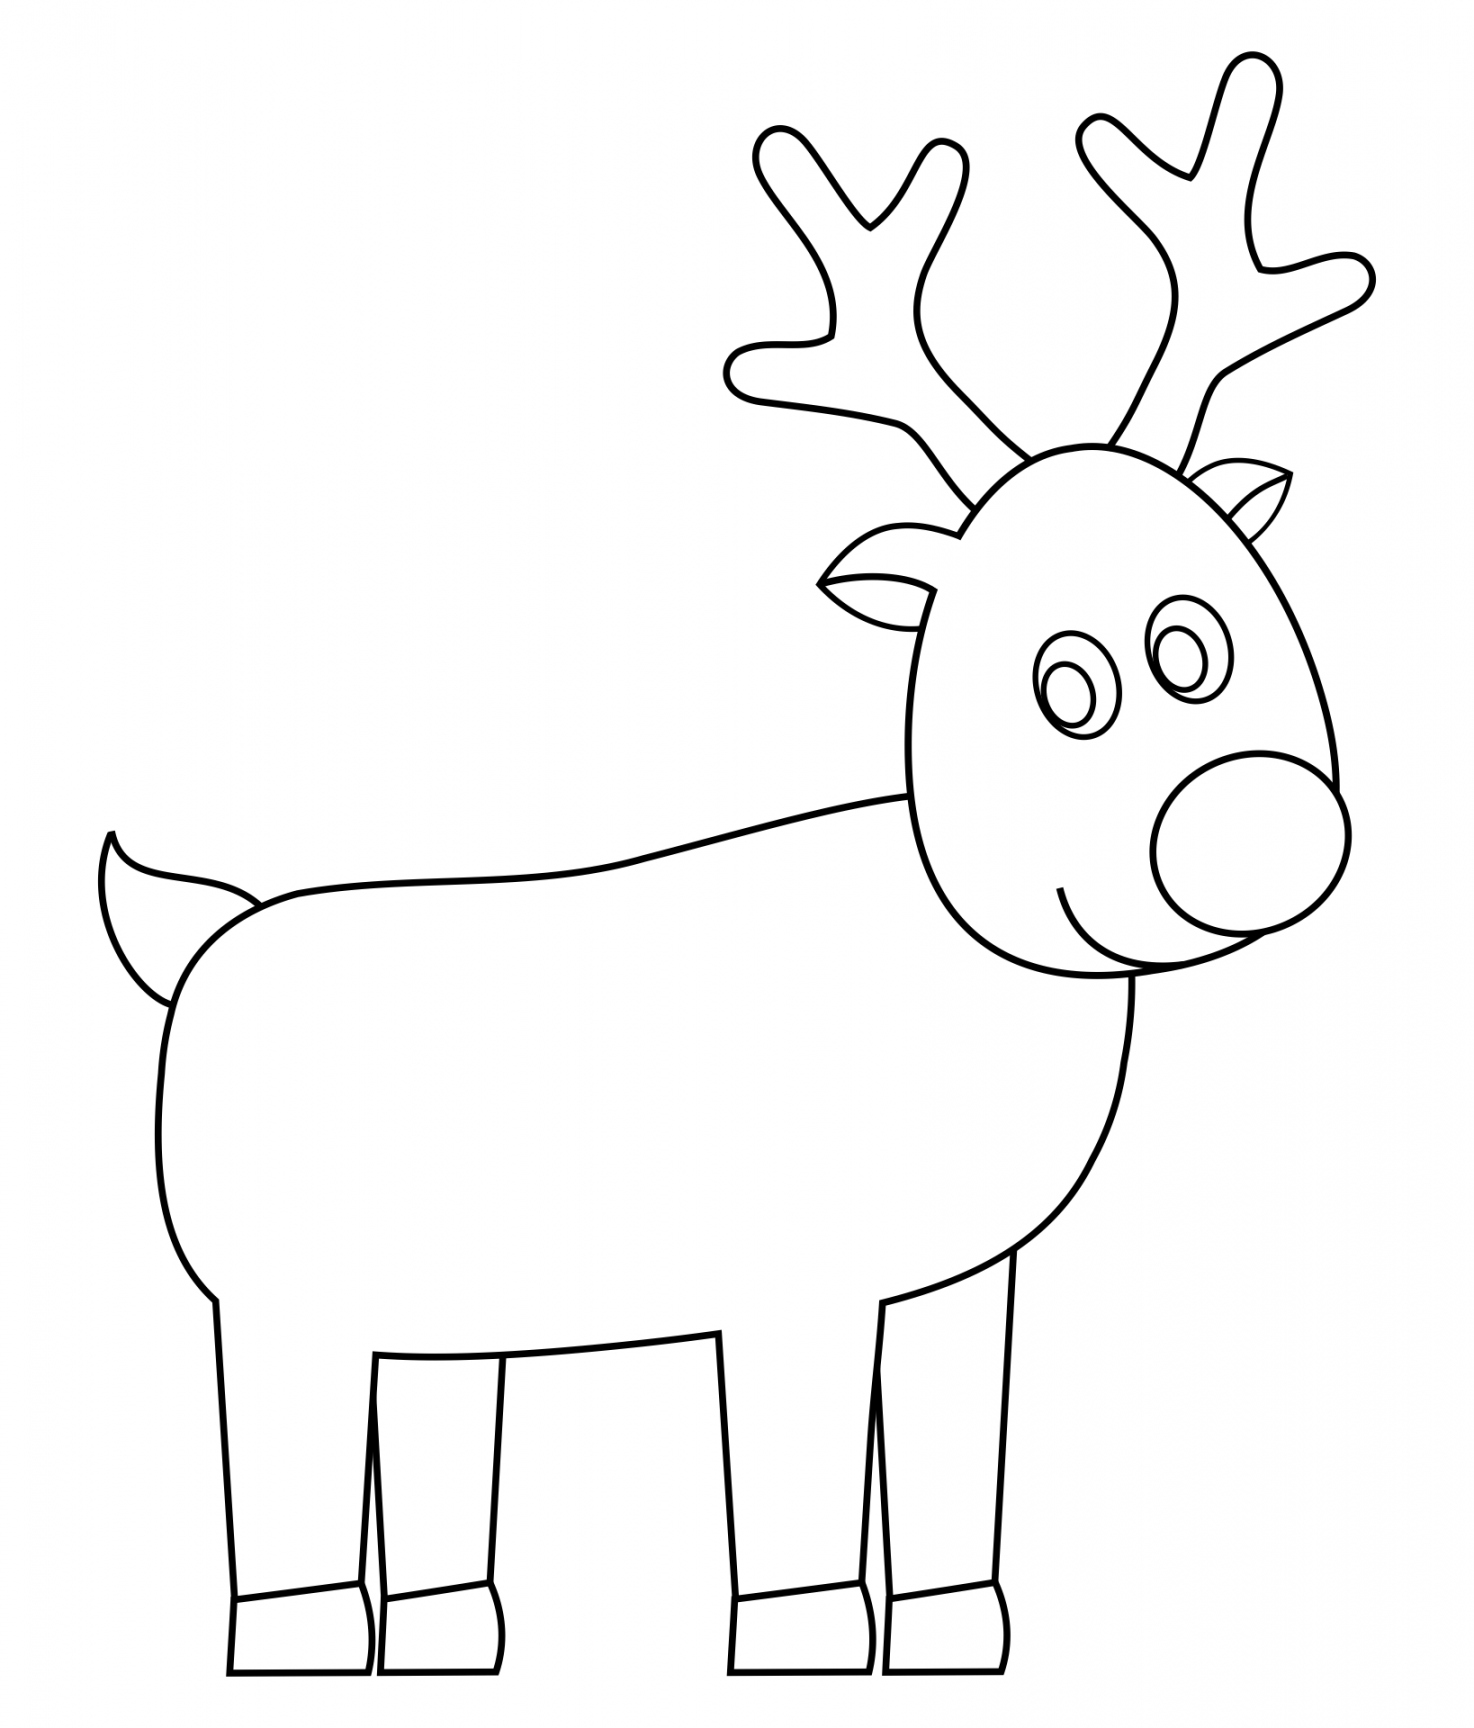 Best Reindeer Free Printable Faces - printablee - Reindeer Template Printable